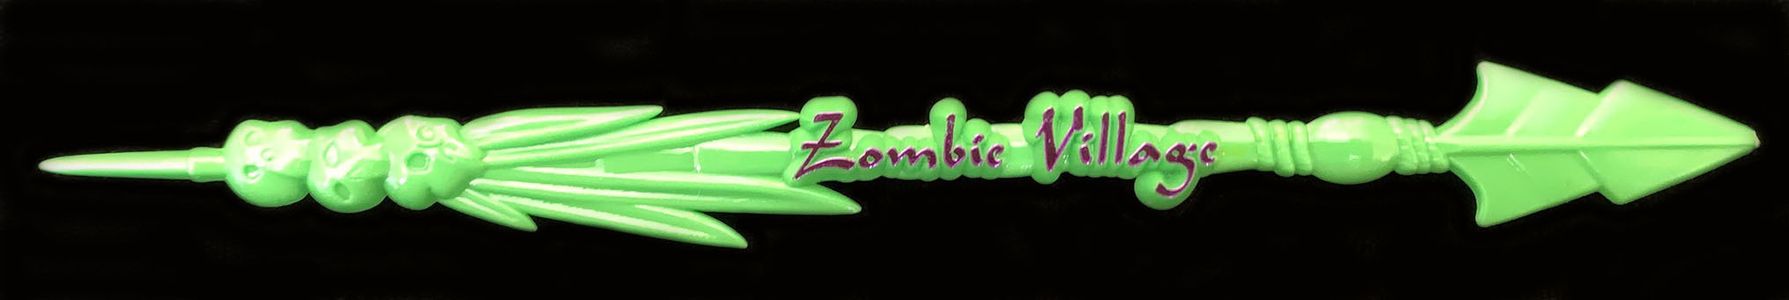 Zombie village green swizzle front